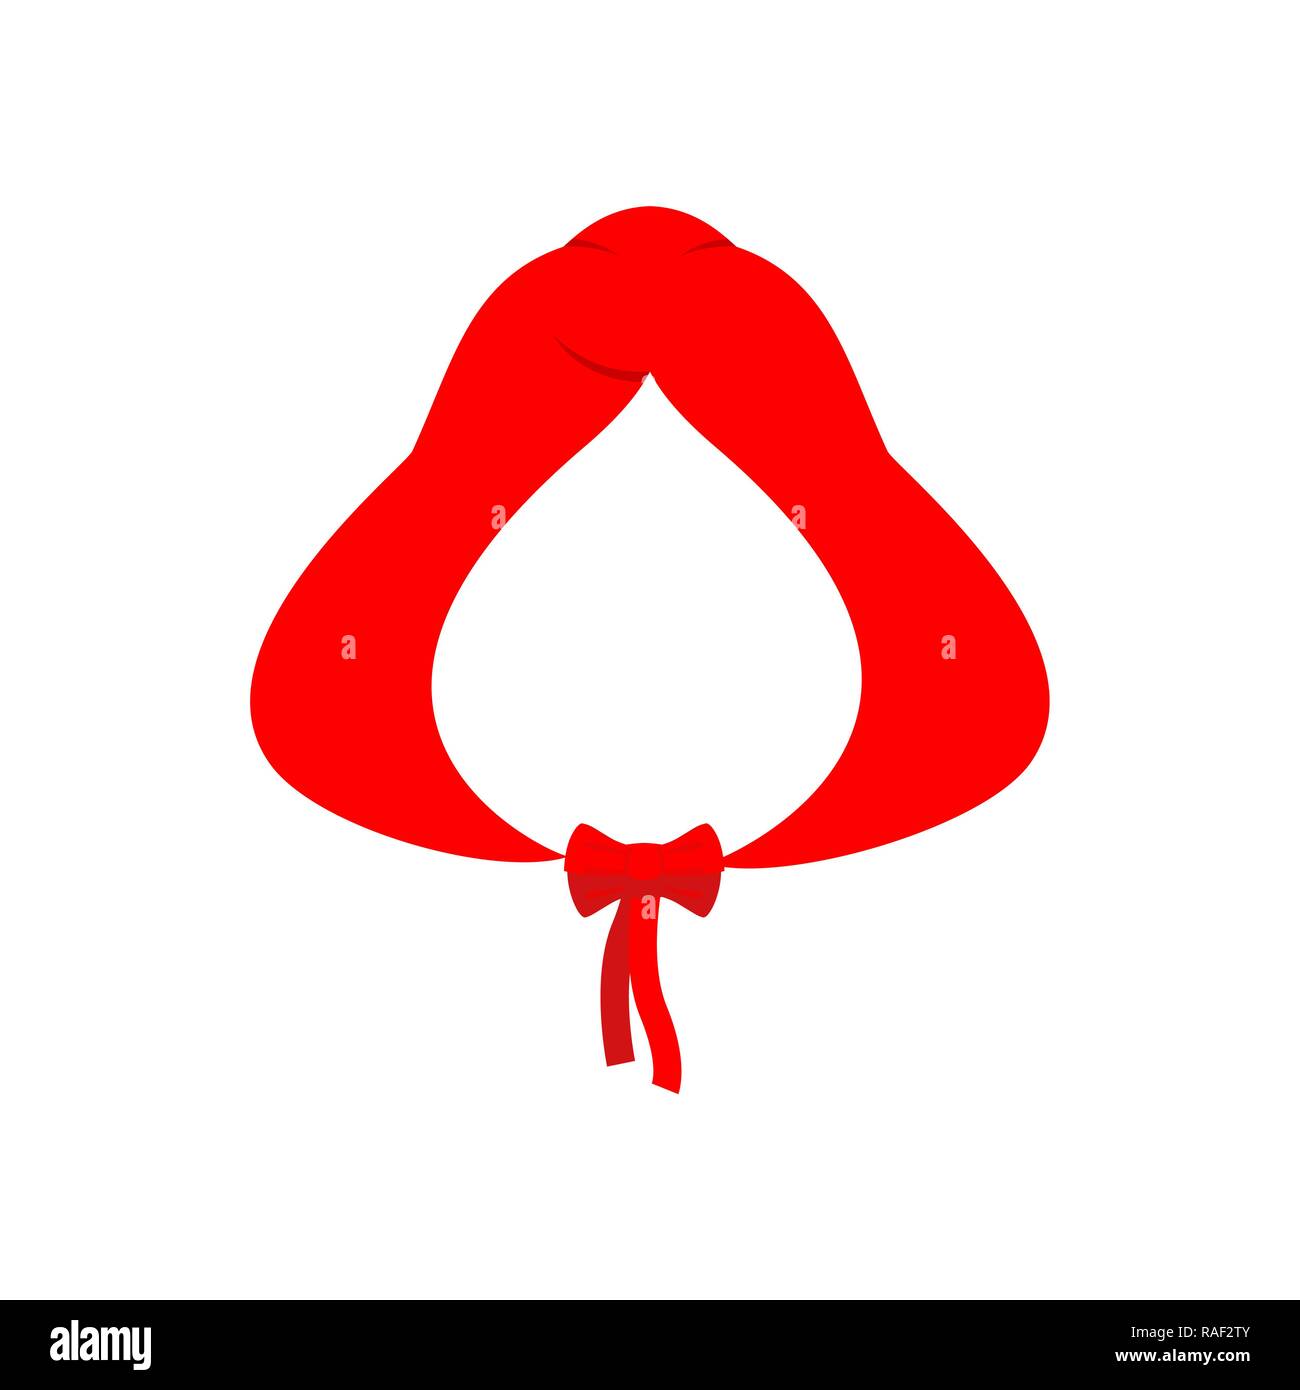 Rote Haube Vorlage isoliert. Rotkäppchen Kleidung Stock-Vektorgrafik - Alamy